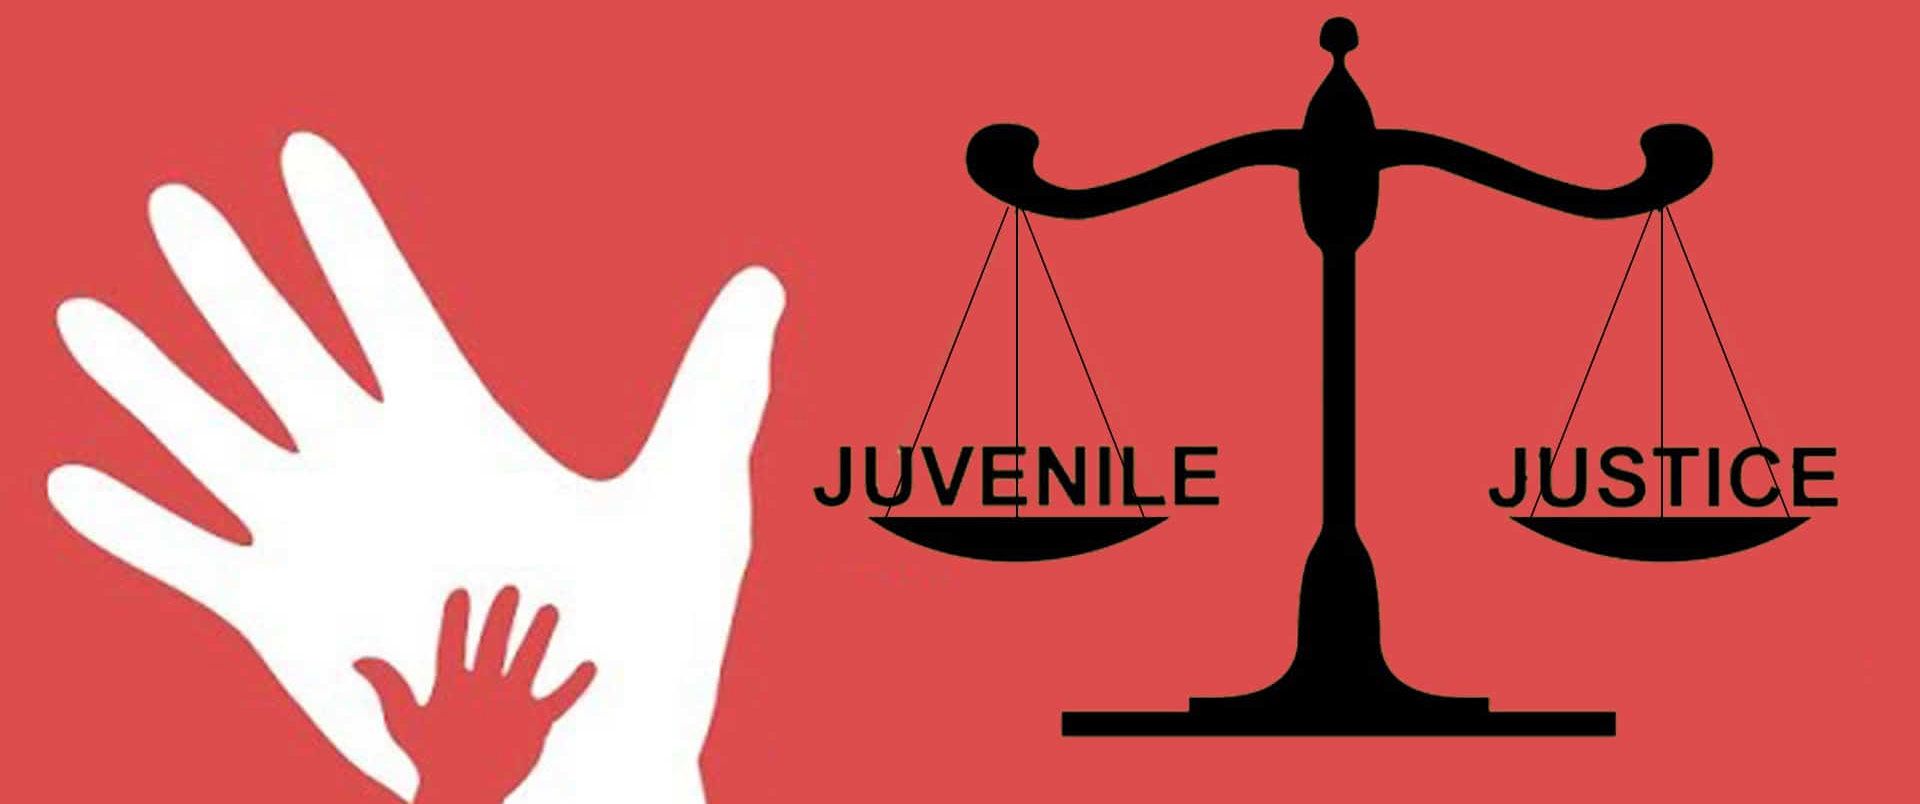 JUVENILE JUSTICE System rehabilitation vs punishment